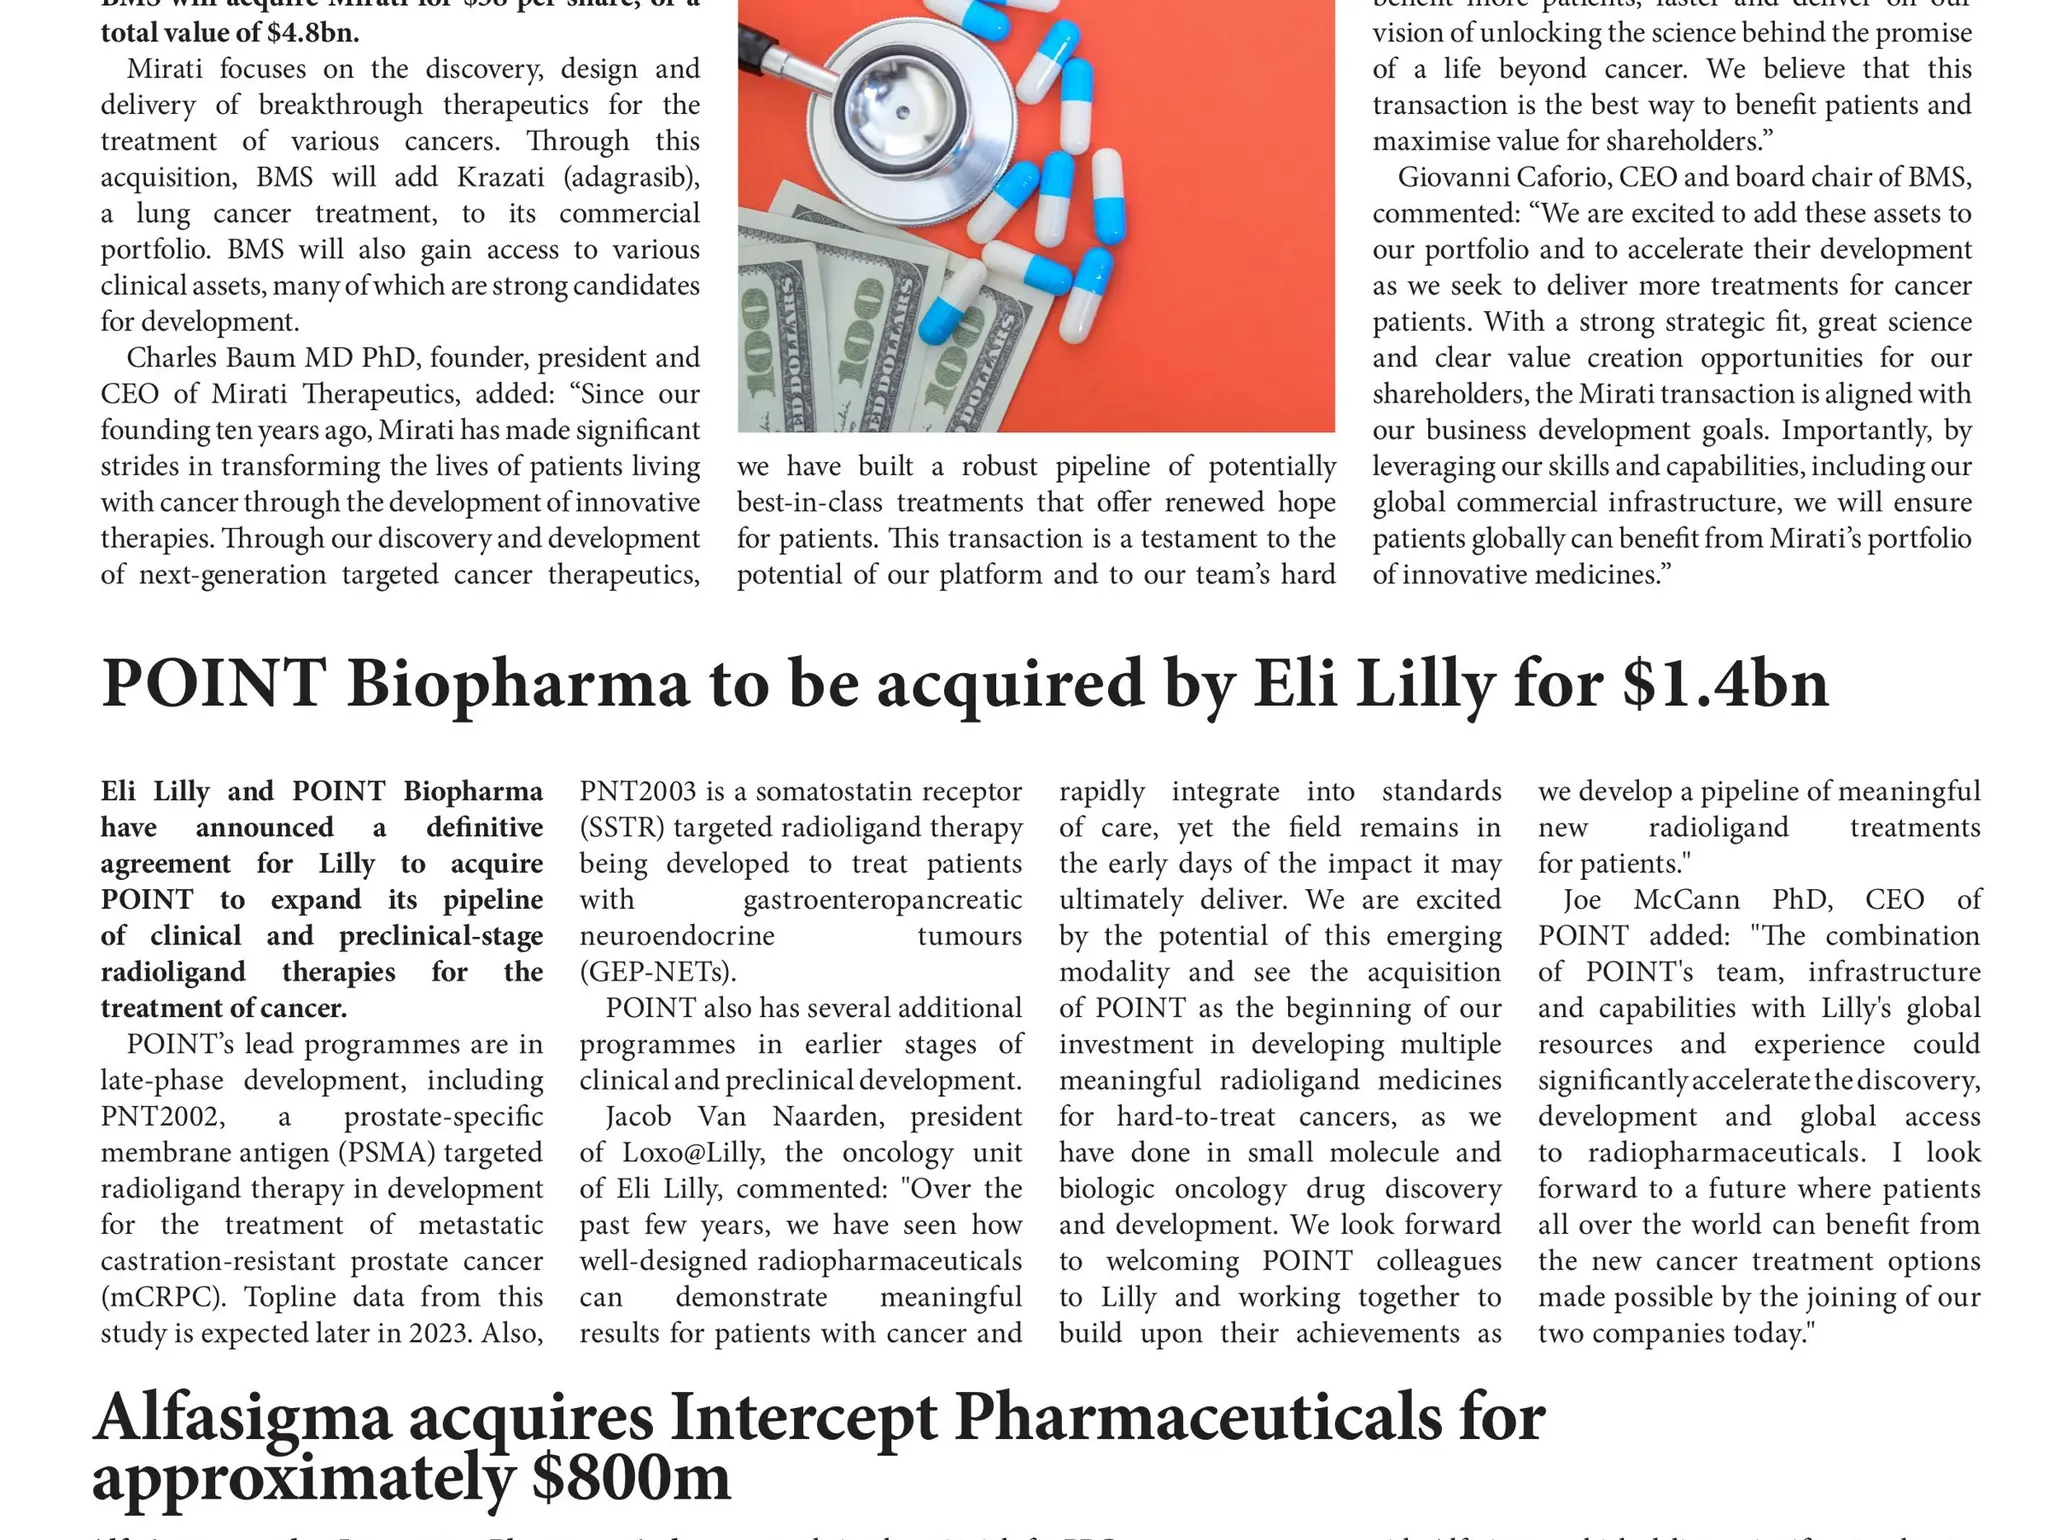 Alfasigma acquires Intercept Pharmaceuticals for approximately $800m